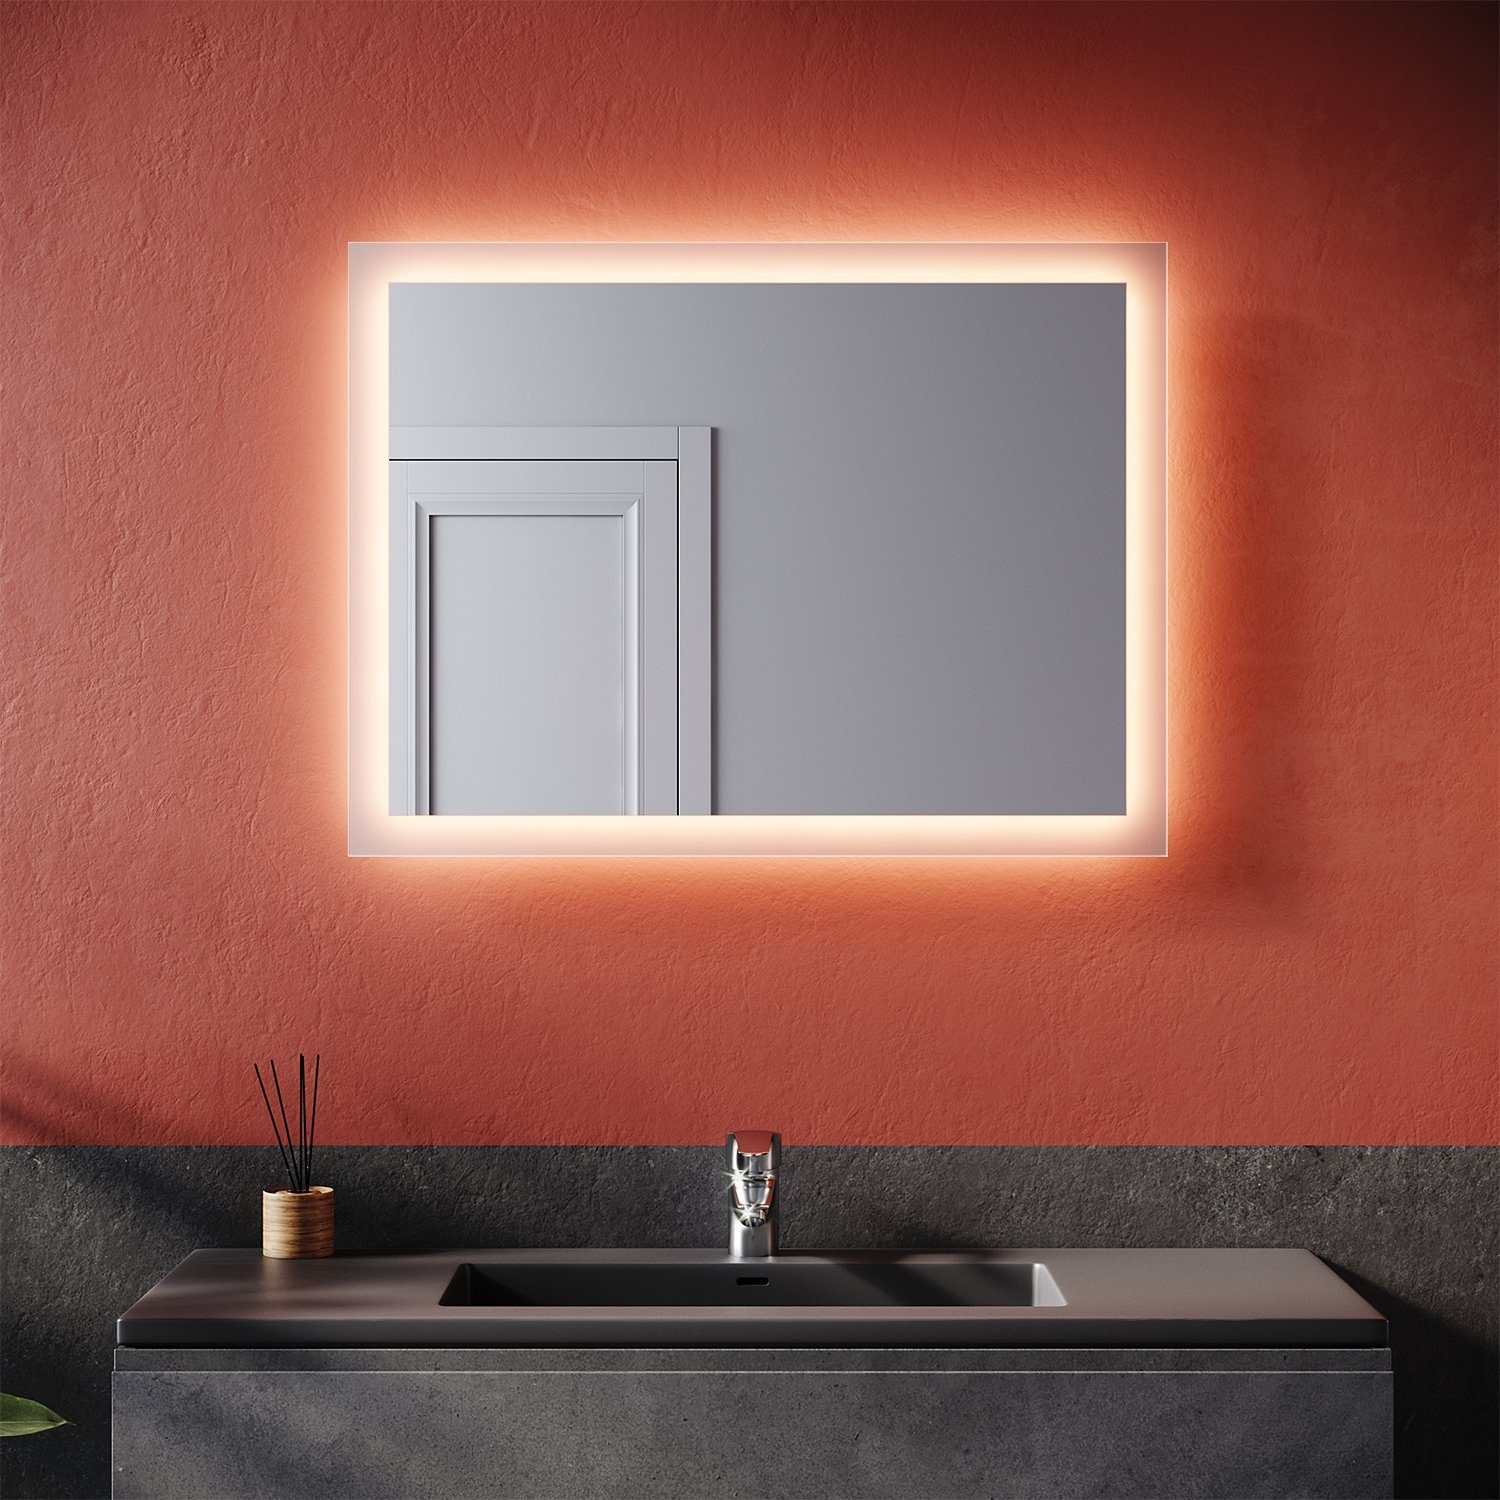 SONNI Badspiegel Badspiegel mit LED-Beleuchtung 80×60 cm, Badezimmerspiegel Wandspiegel | Badspiegel